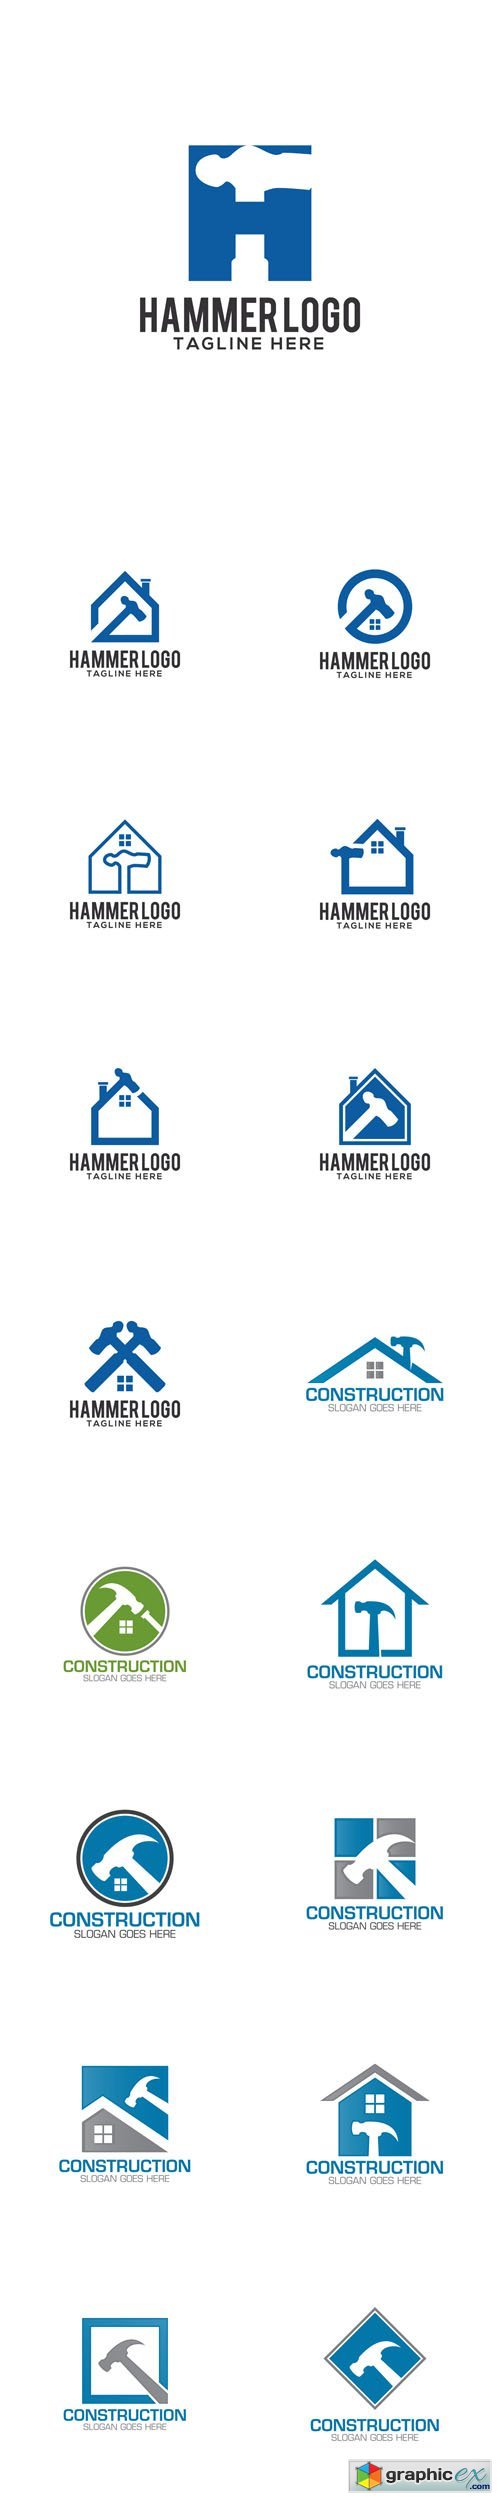 Construction Creative Concept Logo Design